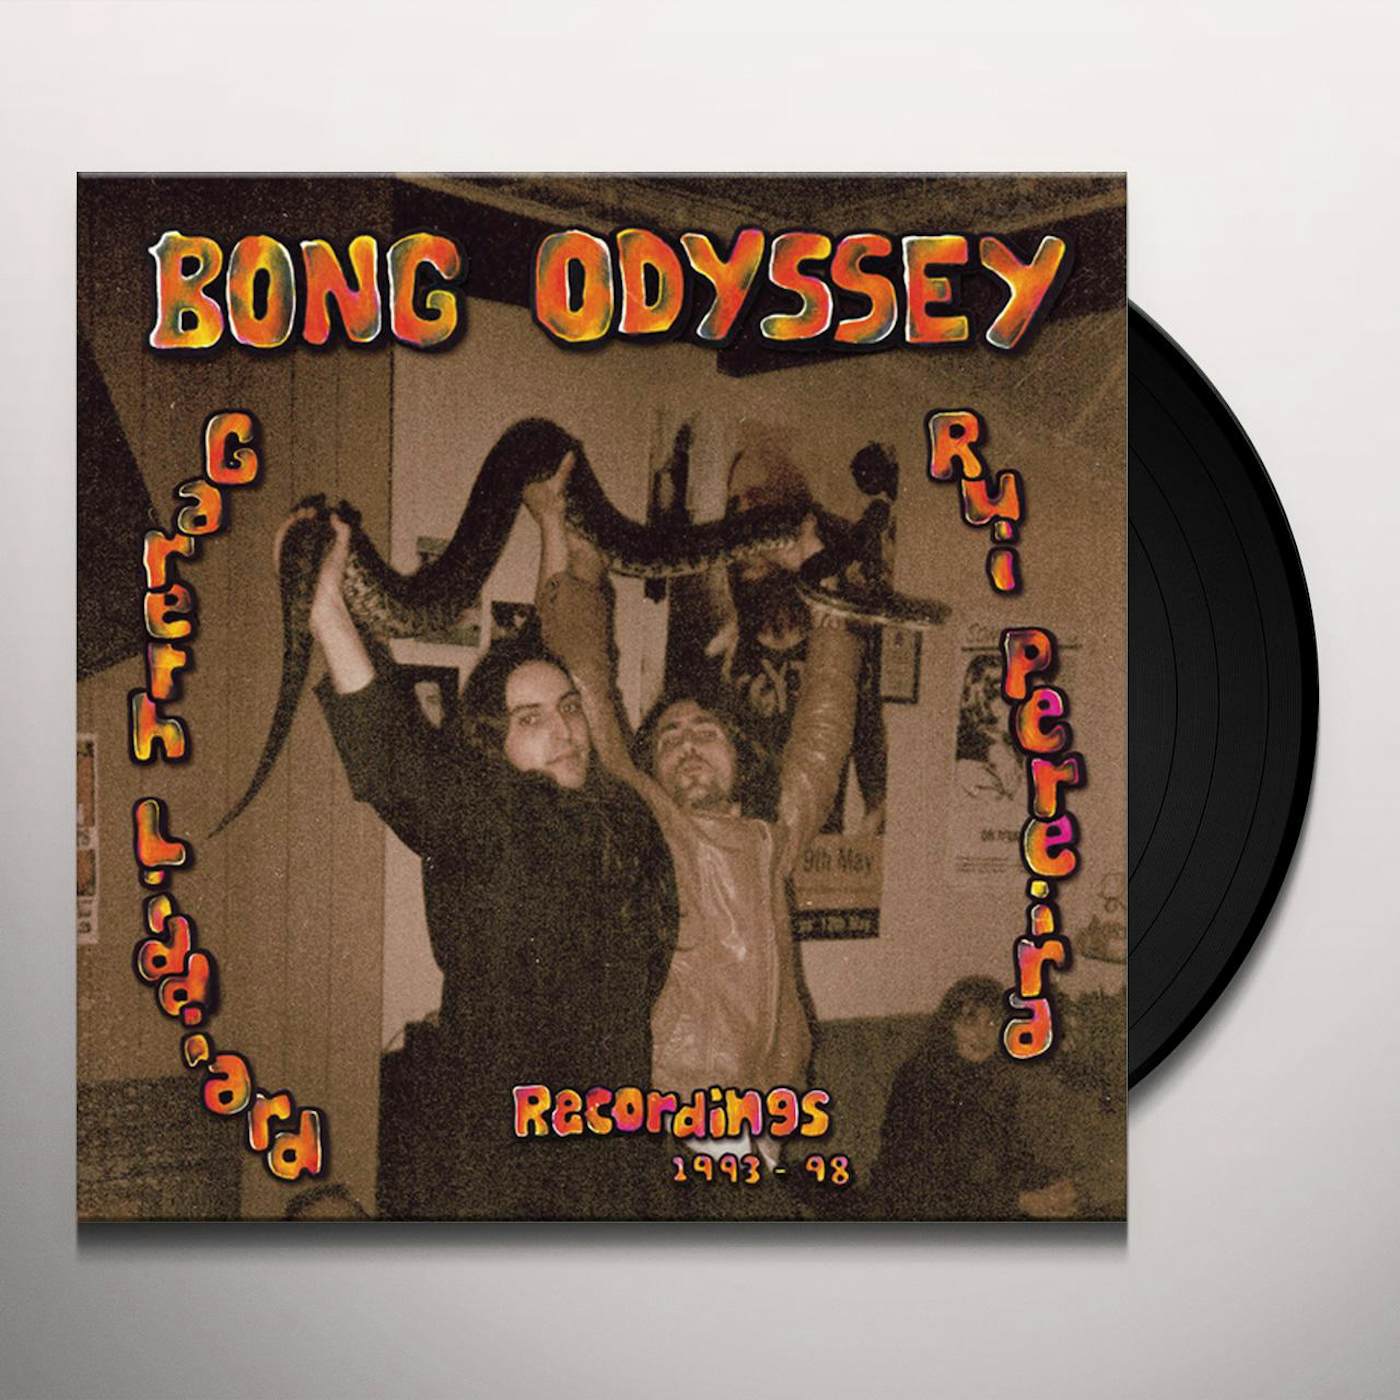 Bong Odyssey GARETH LIDDIARD & RUI PEREIRA - RECORDINGS 1993-98 Vinyl Record